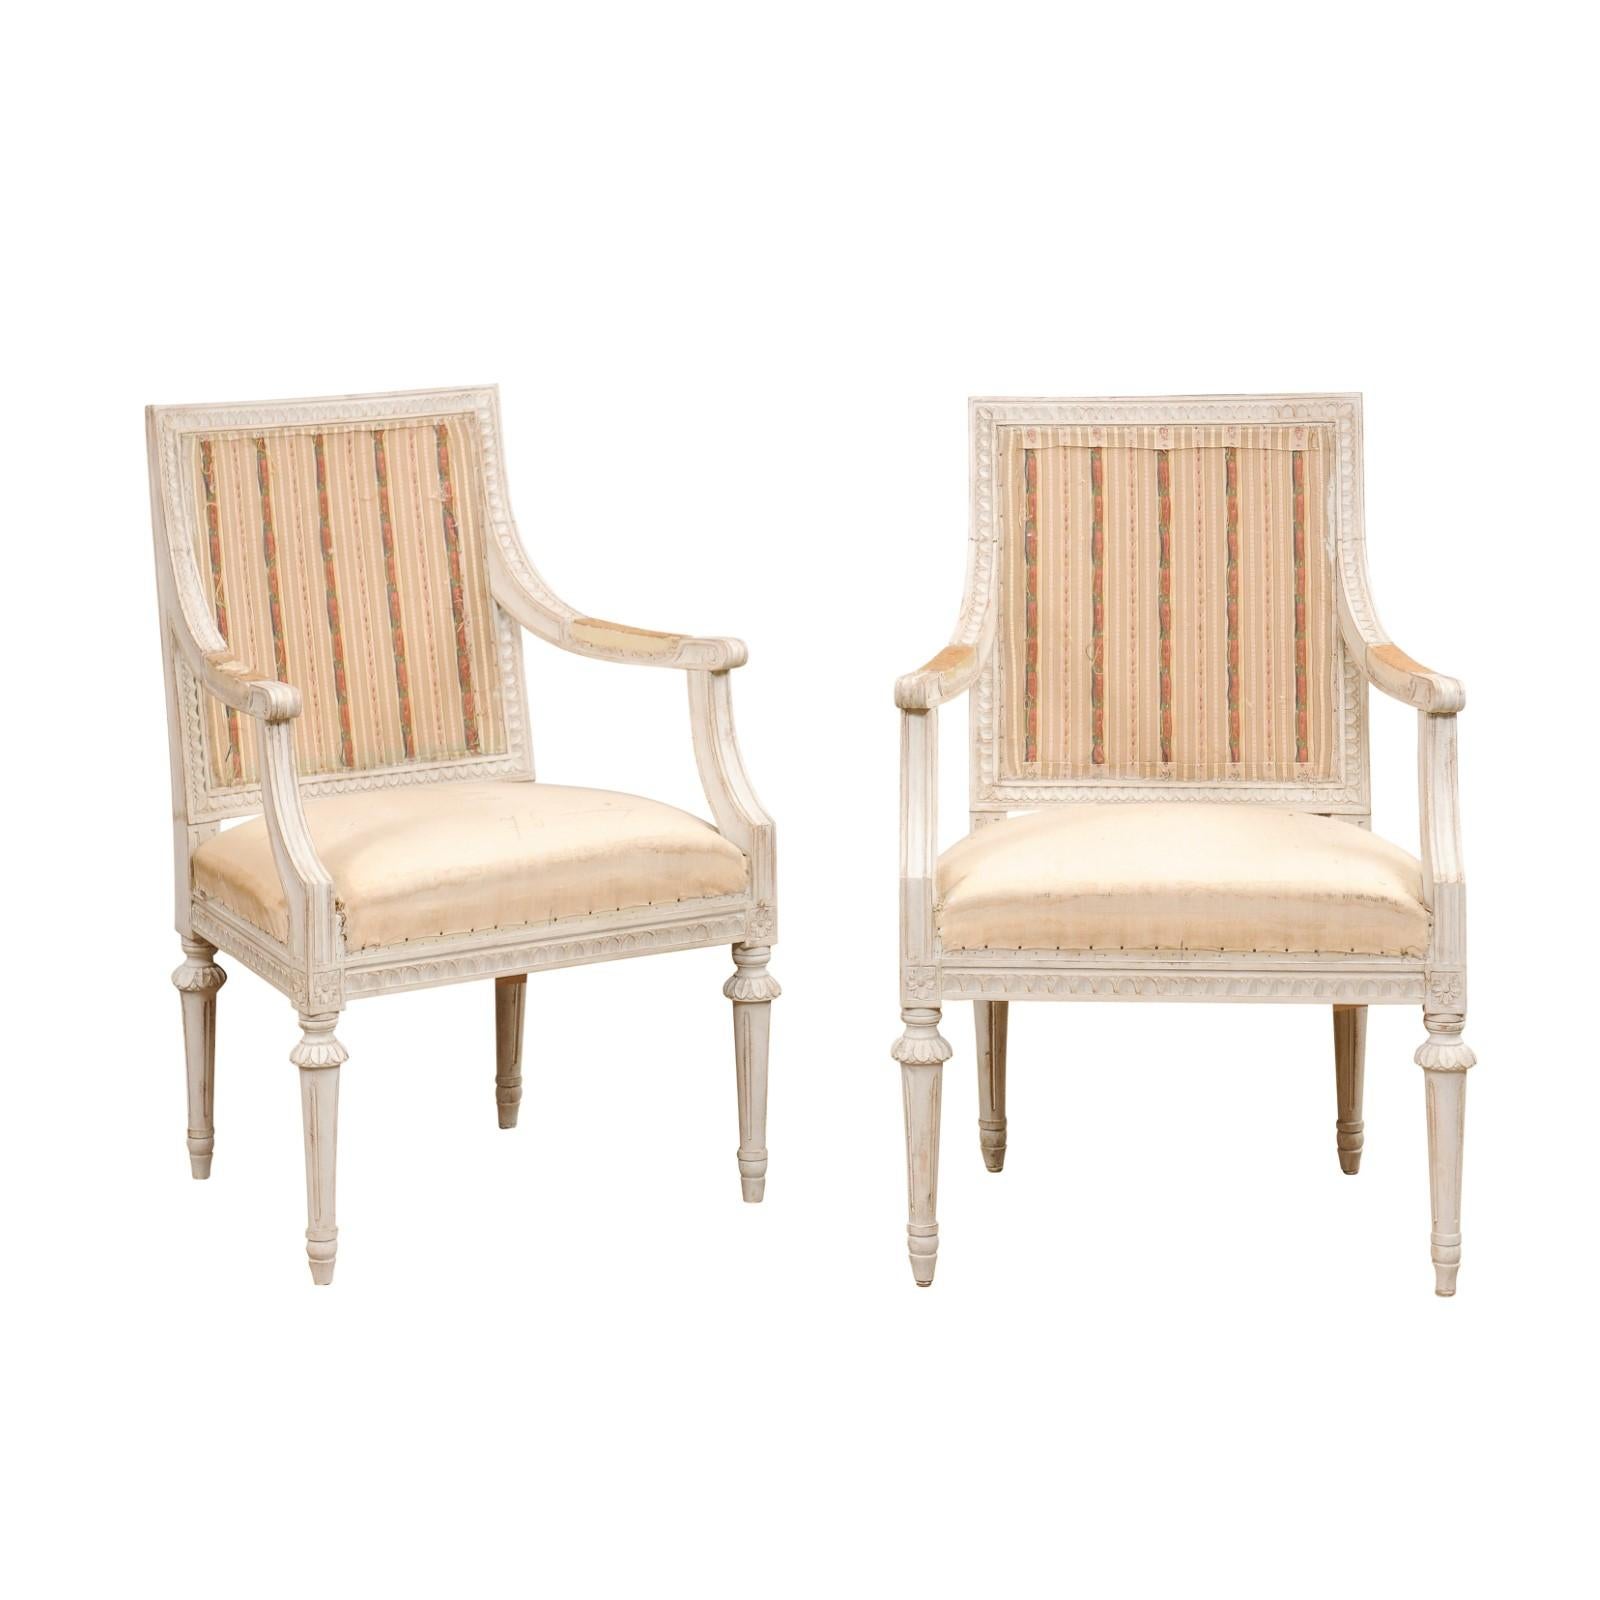 Paire de fauteuils suédois en bois peint de style gustavien du début du 20e siècle, avec des accoudoirs à enroulement, des motifs de feuilles d'eau et de rosettes sculptés et des pieds cannelés. Créée en Suède au début du XXe siècle, cette paire de